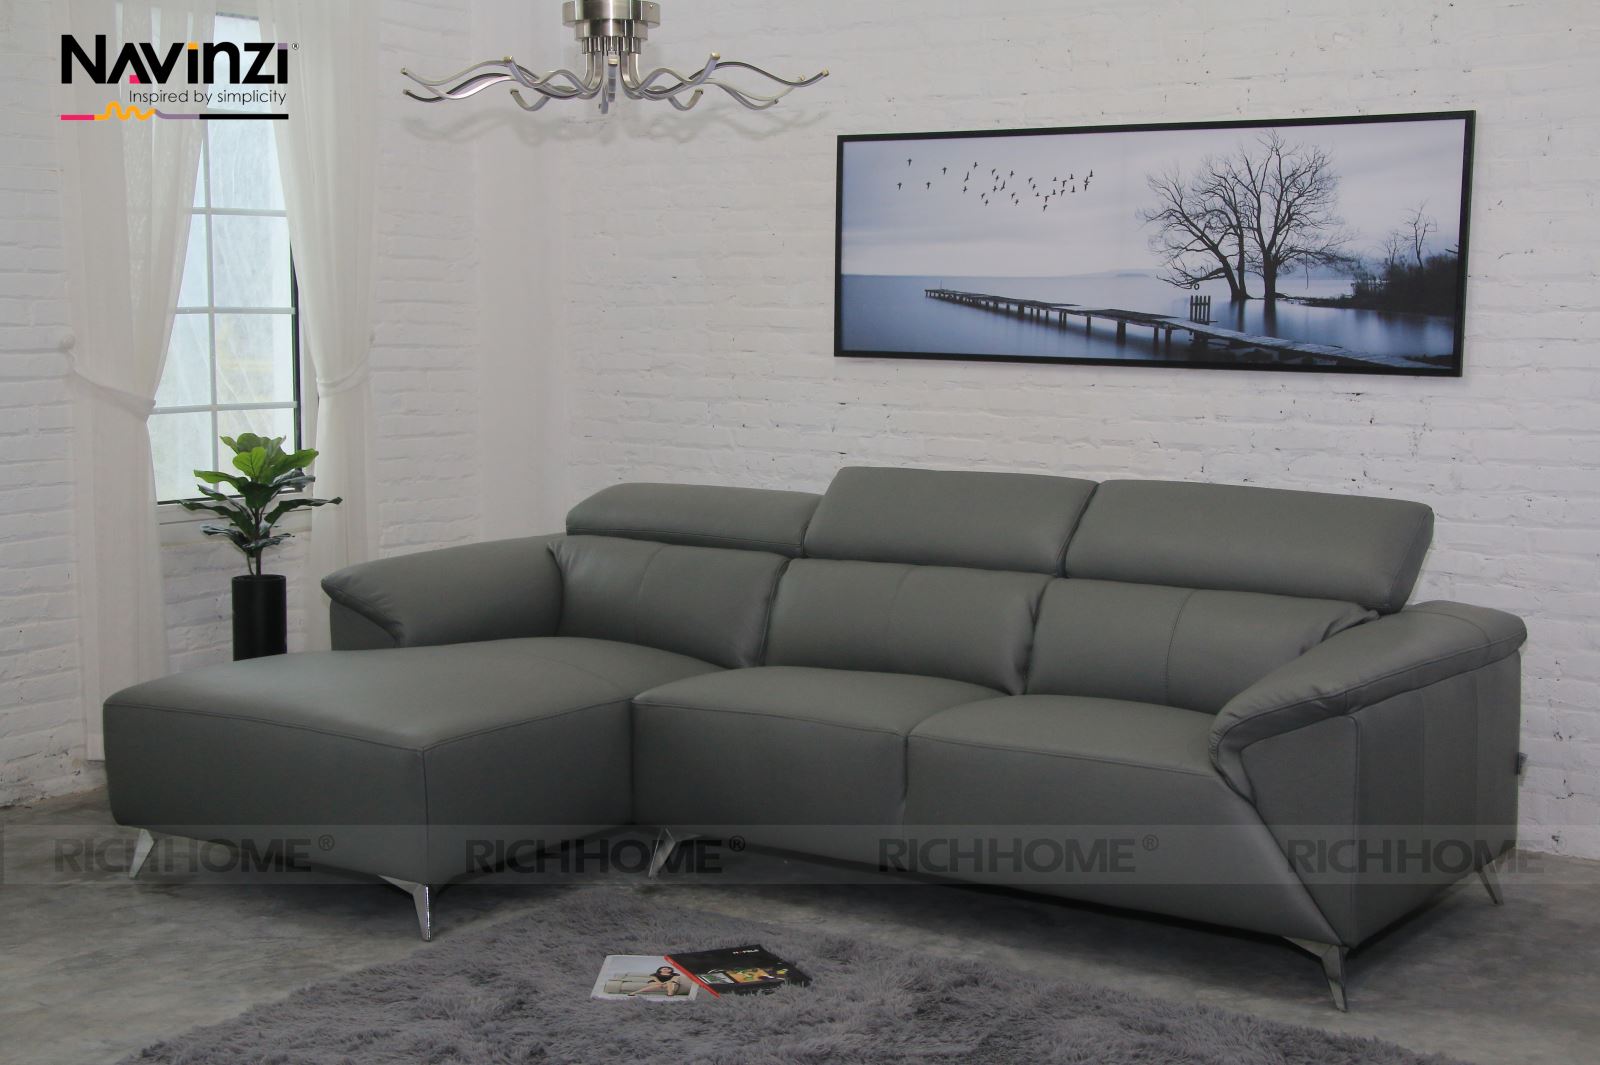 6 mẫu bàn ghế sofa góc nhập khẩu bán chạy nhất hiện nay - Ảnh 7